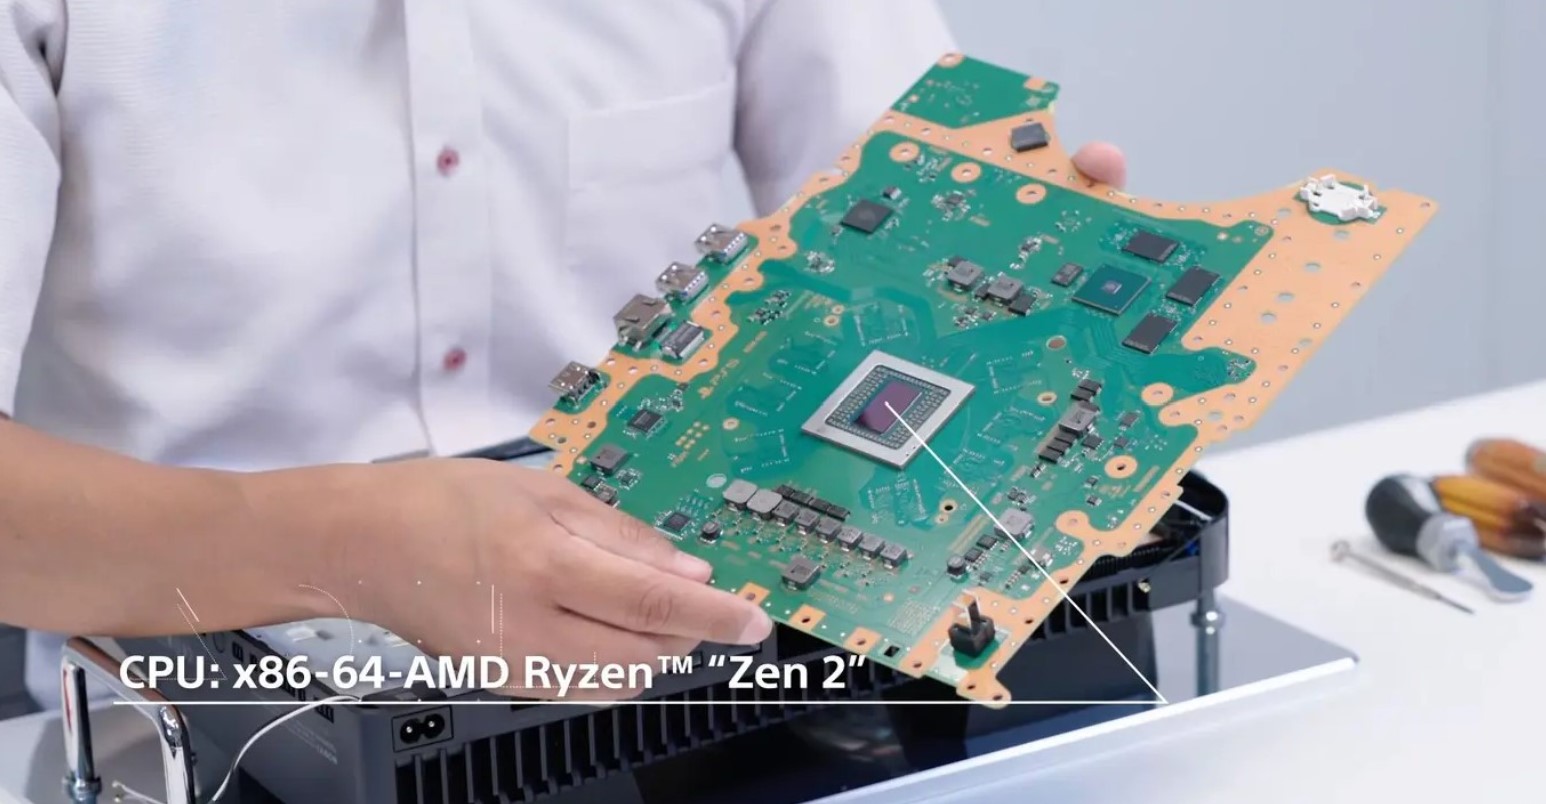 Thừa khả năng, nhưng
tại sao Intel và AMD không sản xuất chip như M2 Max và M2
Ultra